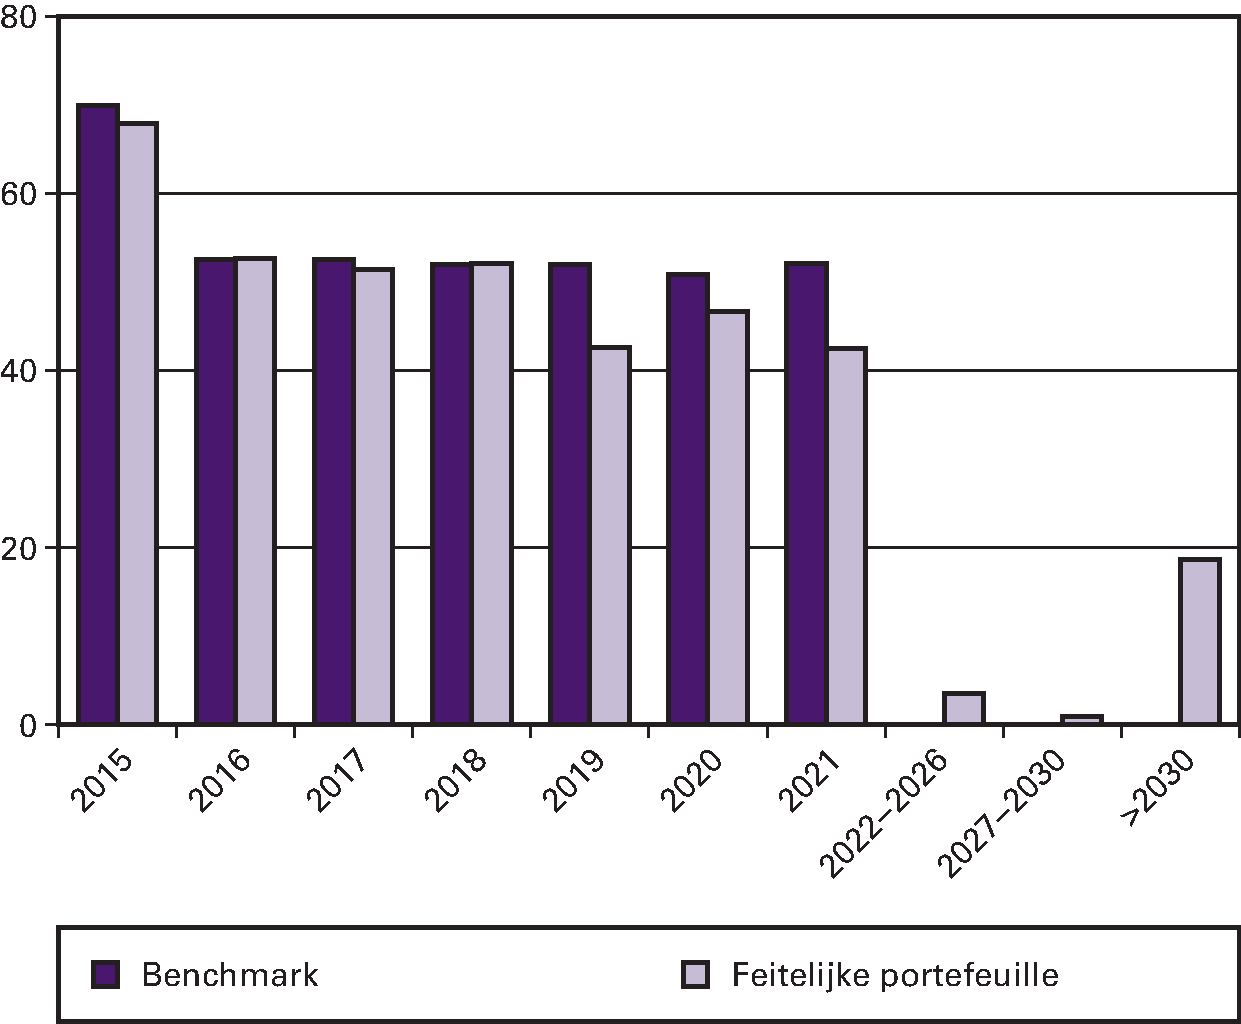 Figuur 1: De risicoprofielen ultimo 2014 van de benchmark en de feitelijke portefeuille (€ mld.)